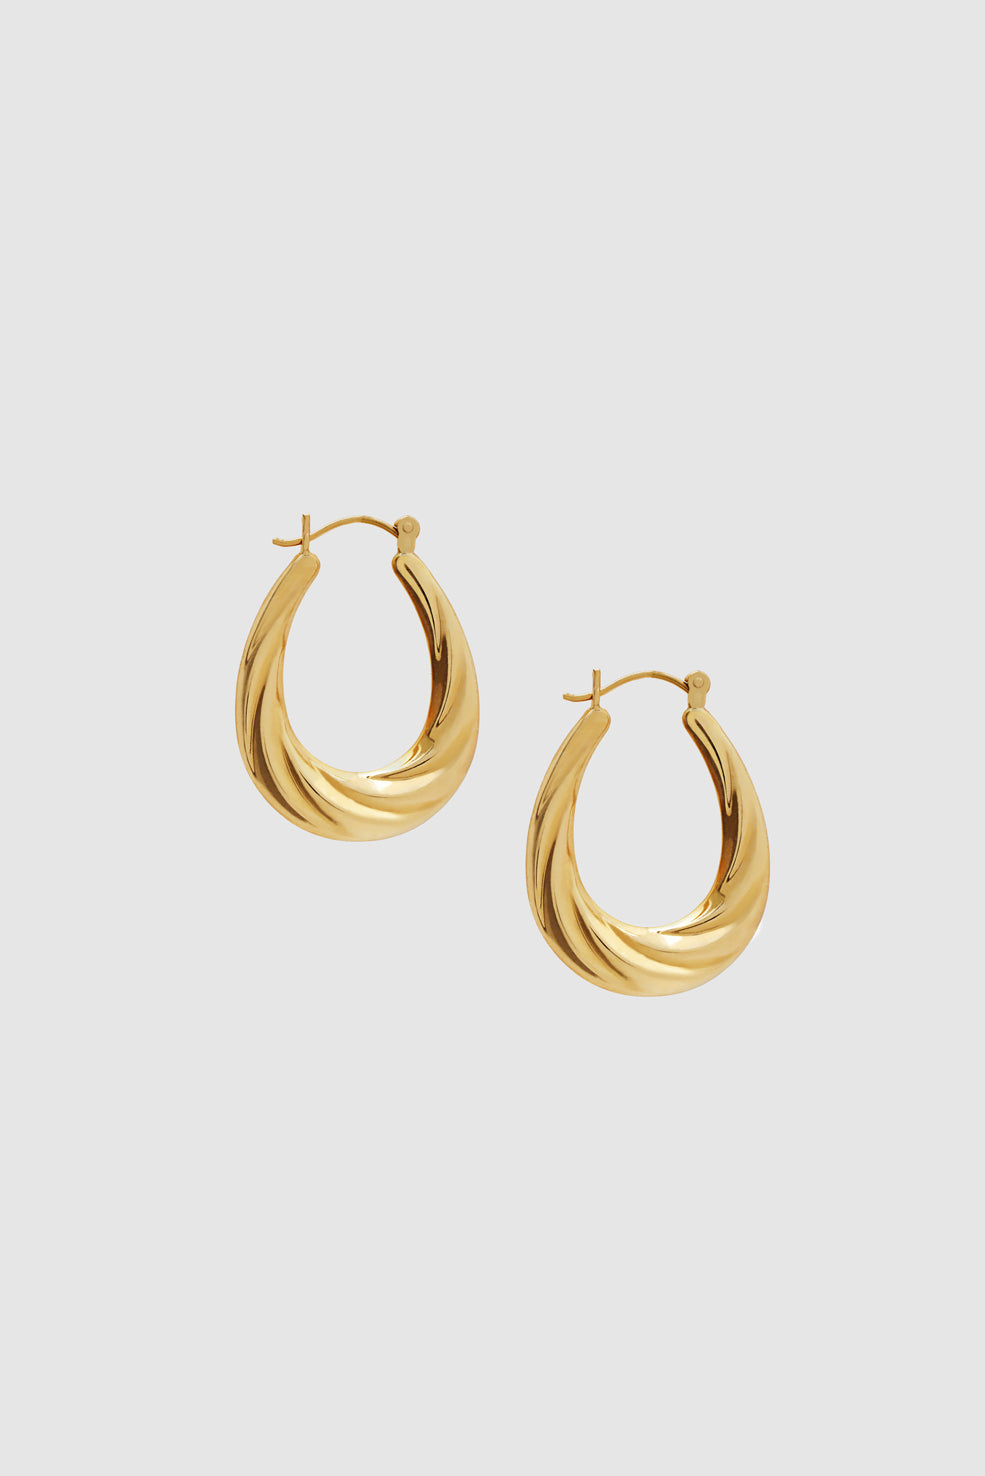 ANINE BING Oval Twist Hoop Earrings - 14k Gold